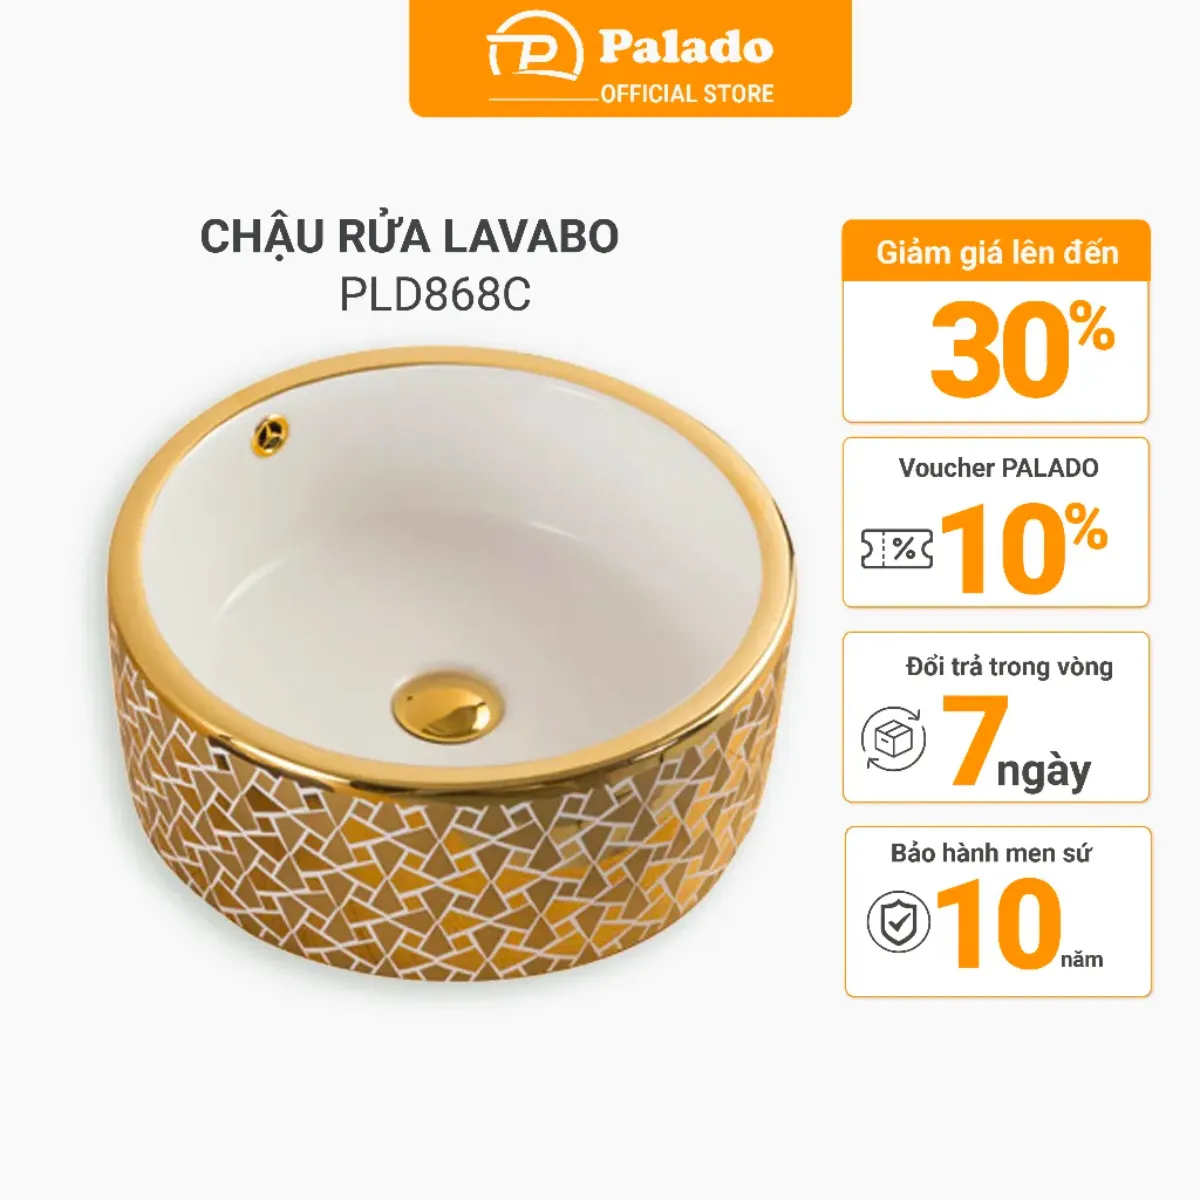 Thông số kỹ thuật của Chậu rửa Lavabo dương bàn Palado PLD868C